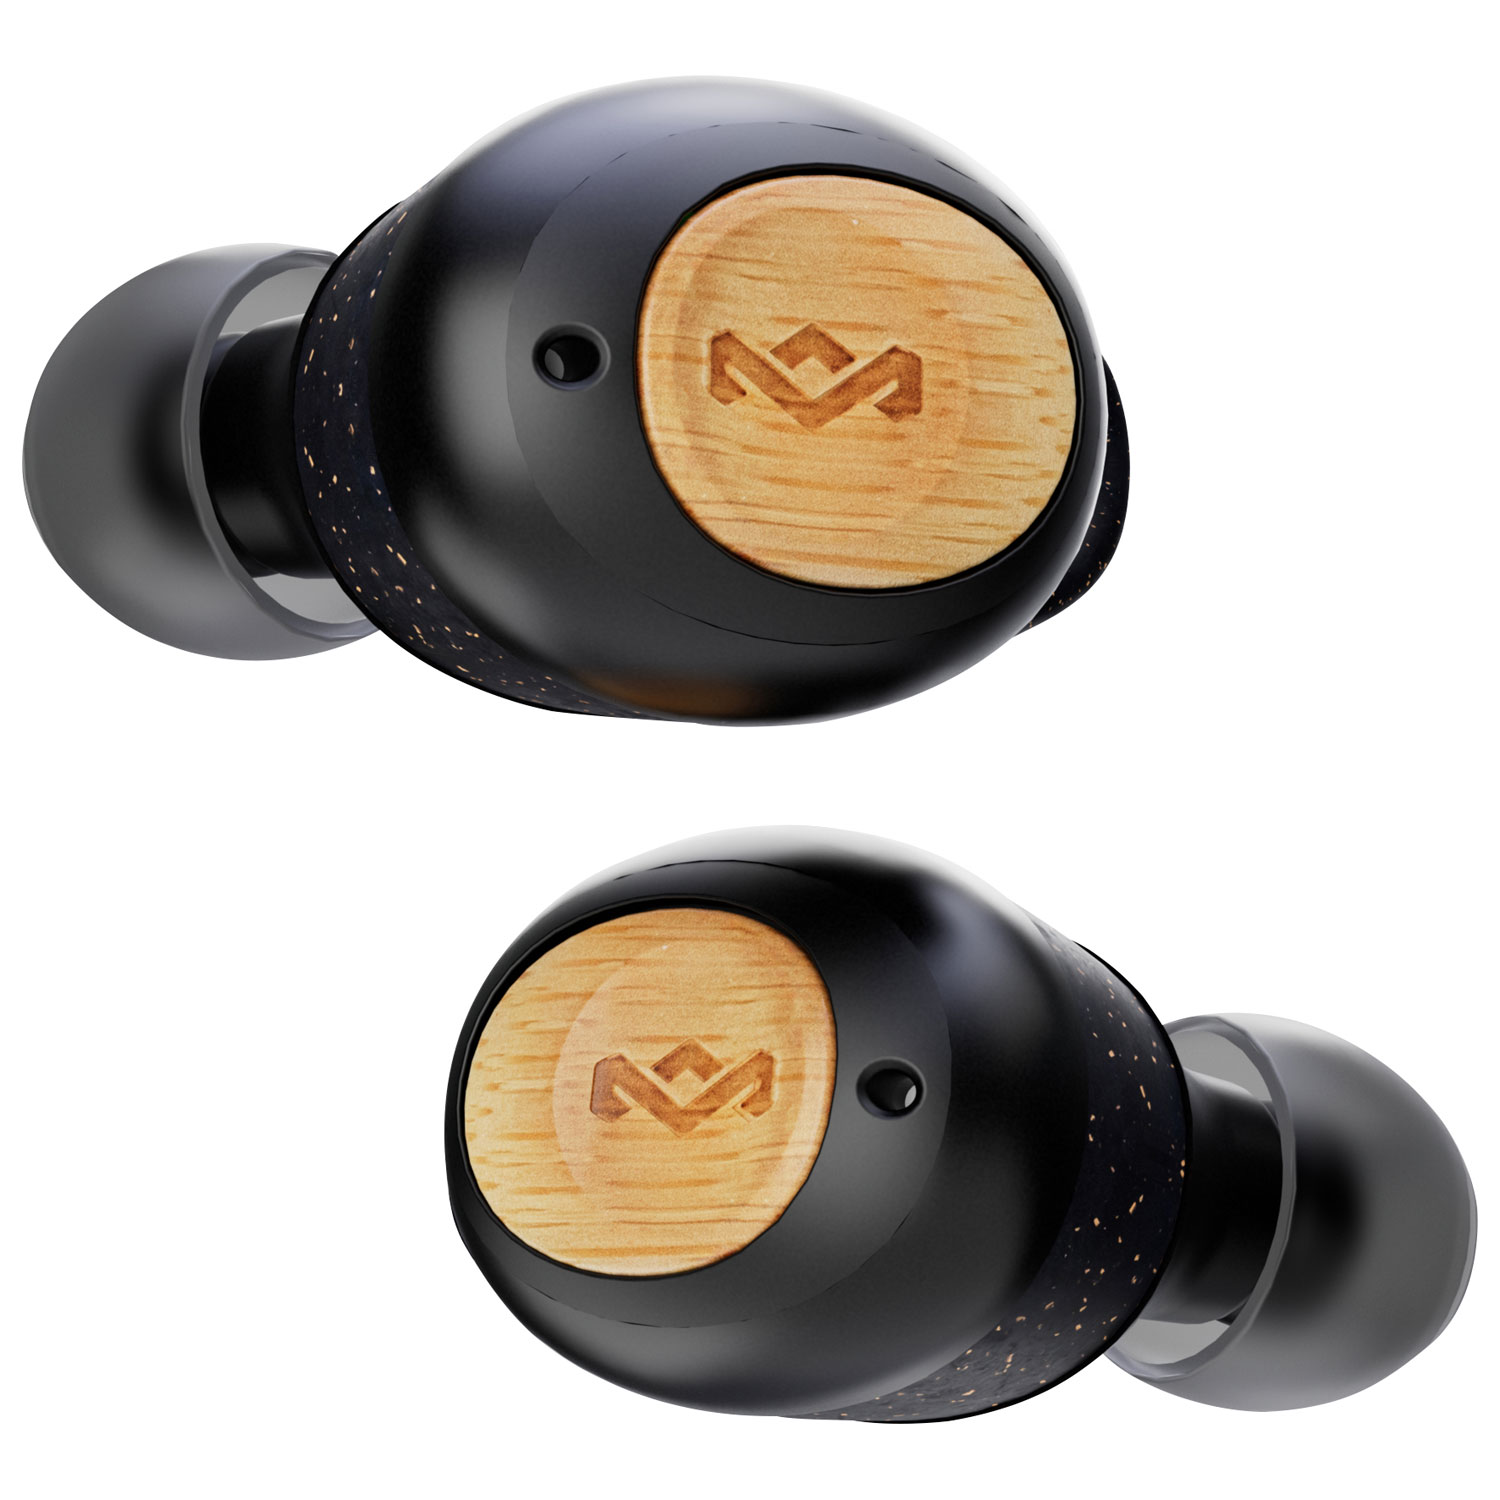 House Of Marley Champion 2 In-Ear True Wireless Earbuds - Black